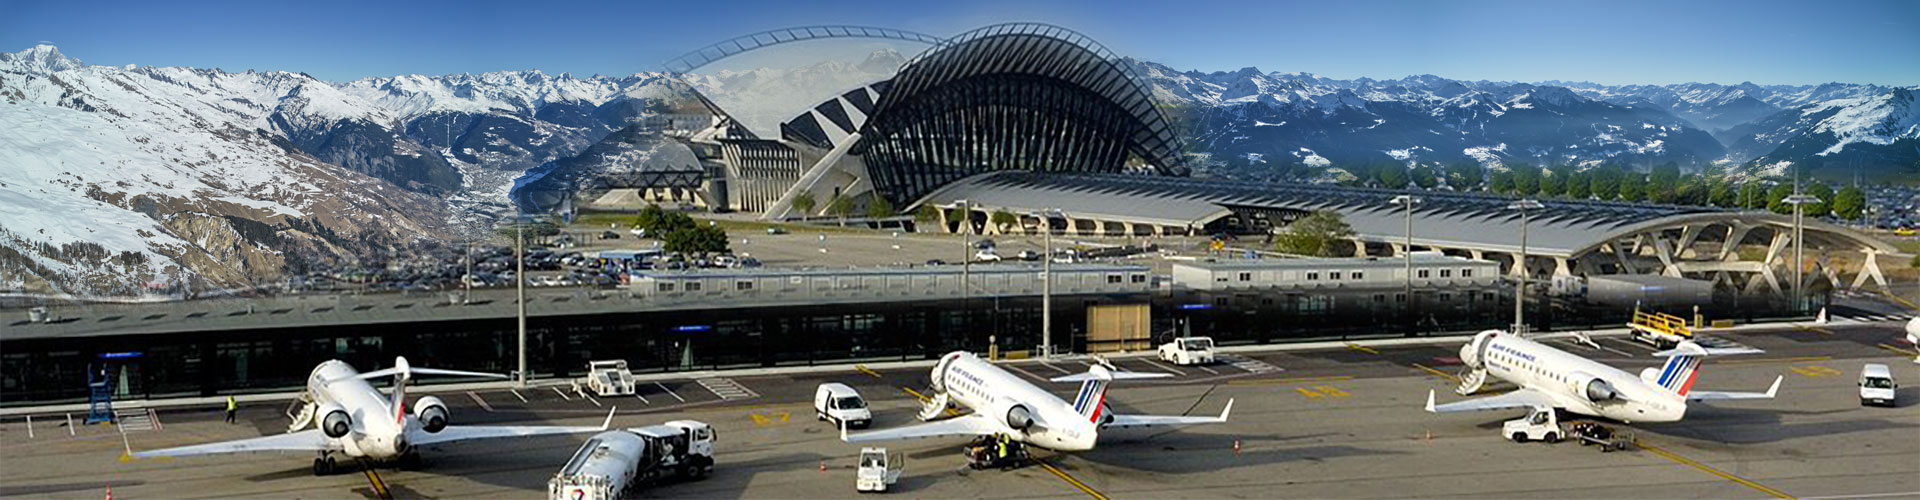 Taxi aéroport de Lyon St Exupéry vers la station de Val-d'Isère en Savoie